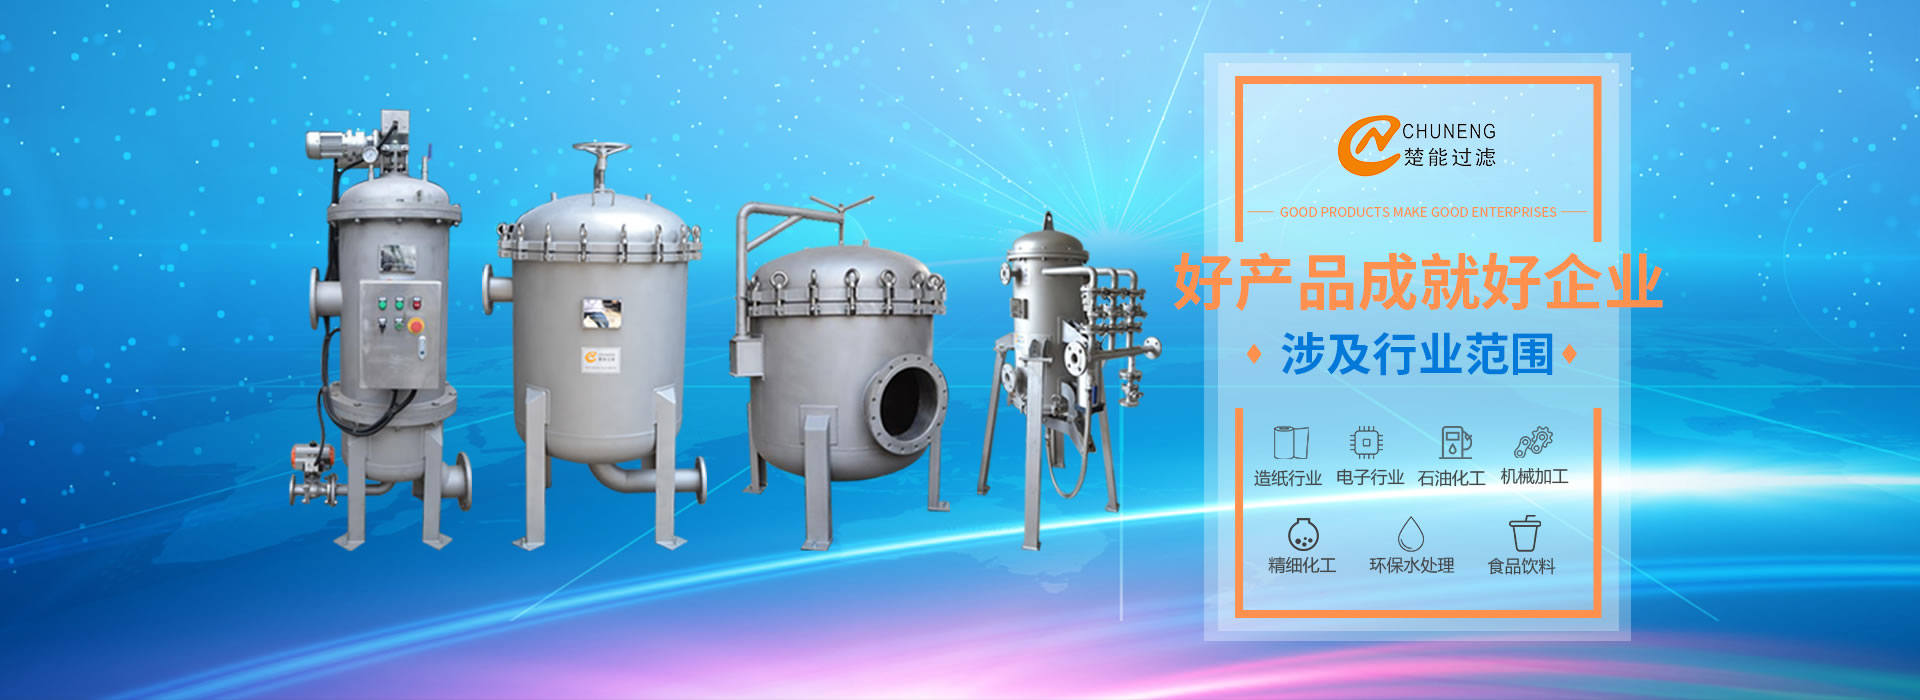 上海楚能工業過濾係統有限公司是集研發、製造、銷售/服務於一體的過濾設備與過濾元件專業生產廠家